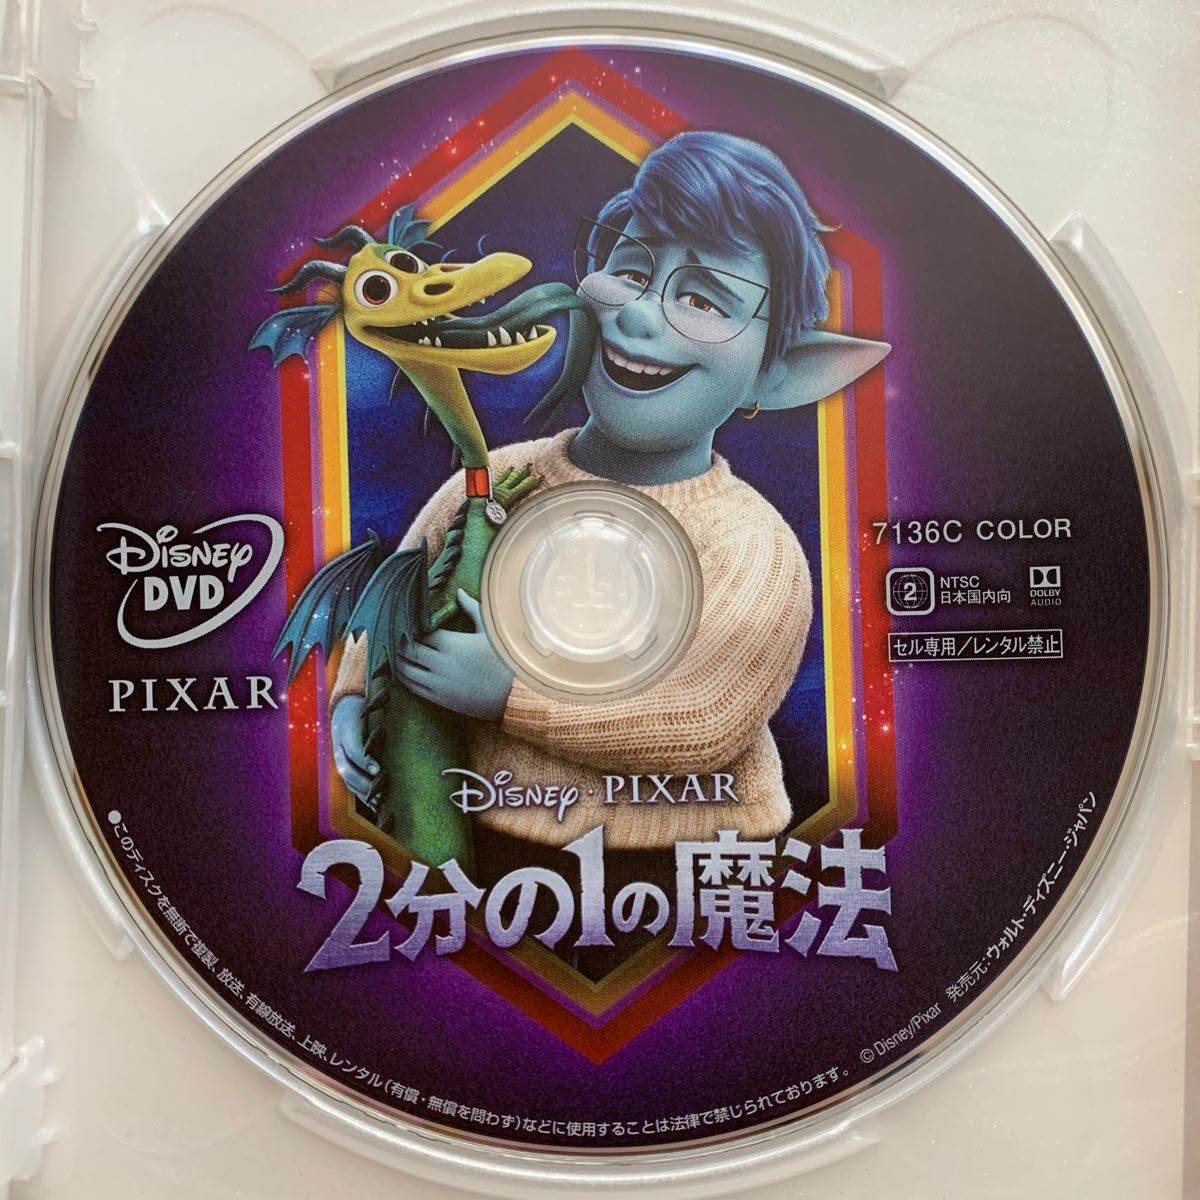 2分の1の魔法 DVD 国内正規版 新品未再生 MovieNEX ディズニー disney ピクサー